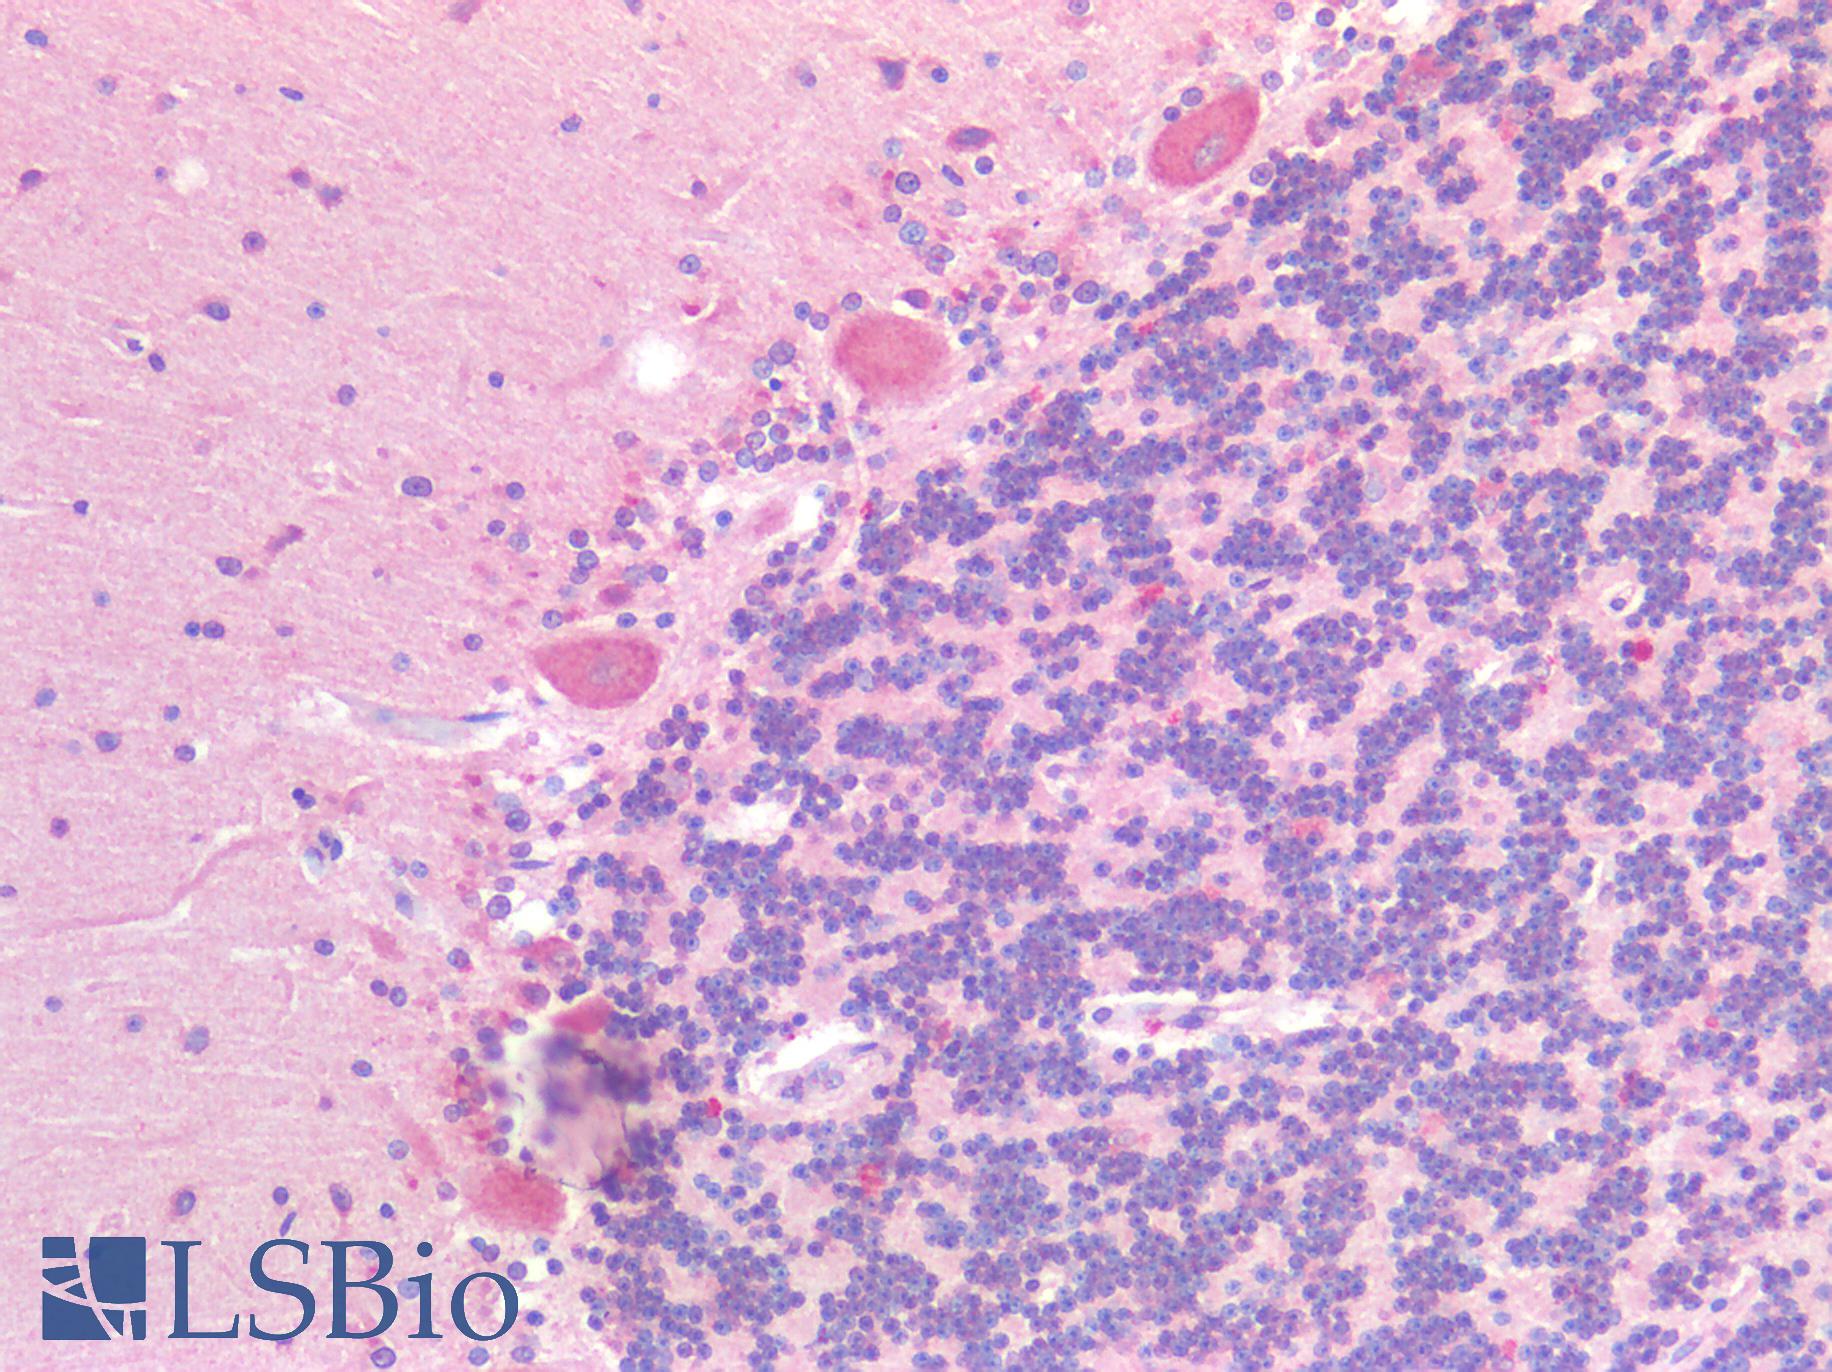 GPR87 Antibody - Human Brain, Cerebellum: Formalin-Fixed, Paraffin-Embedded (FFPE)